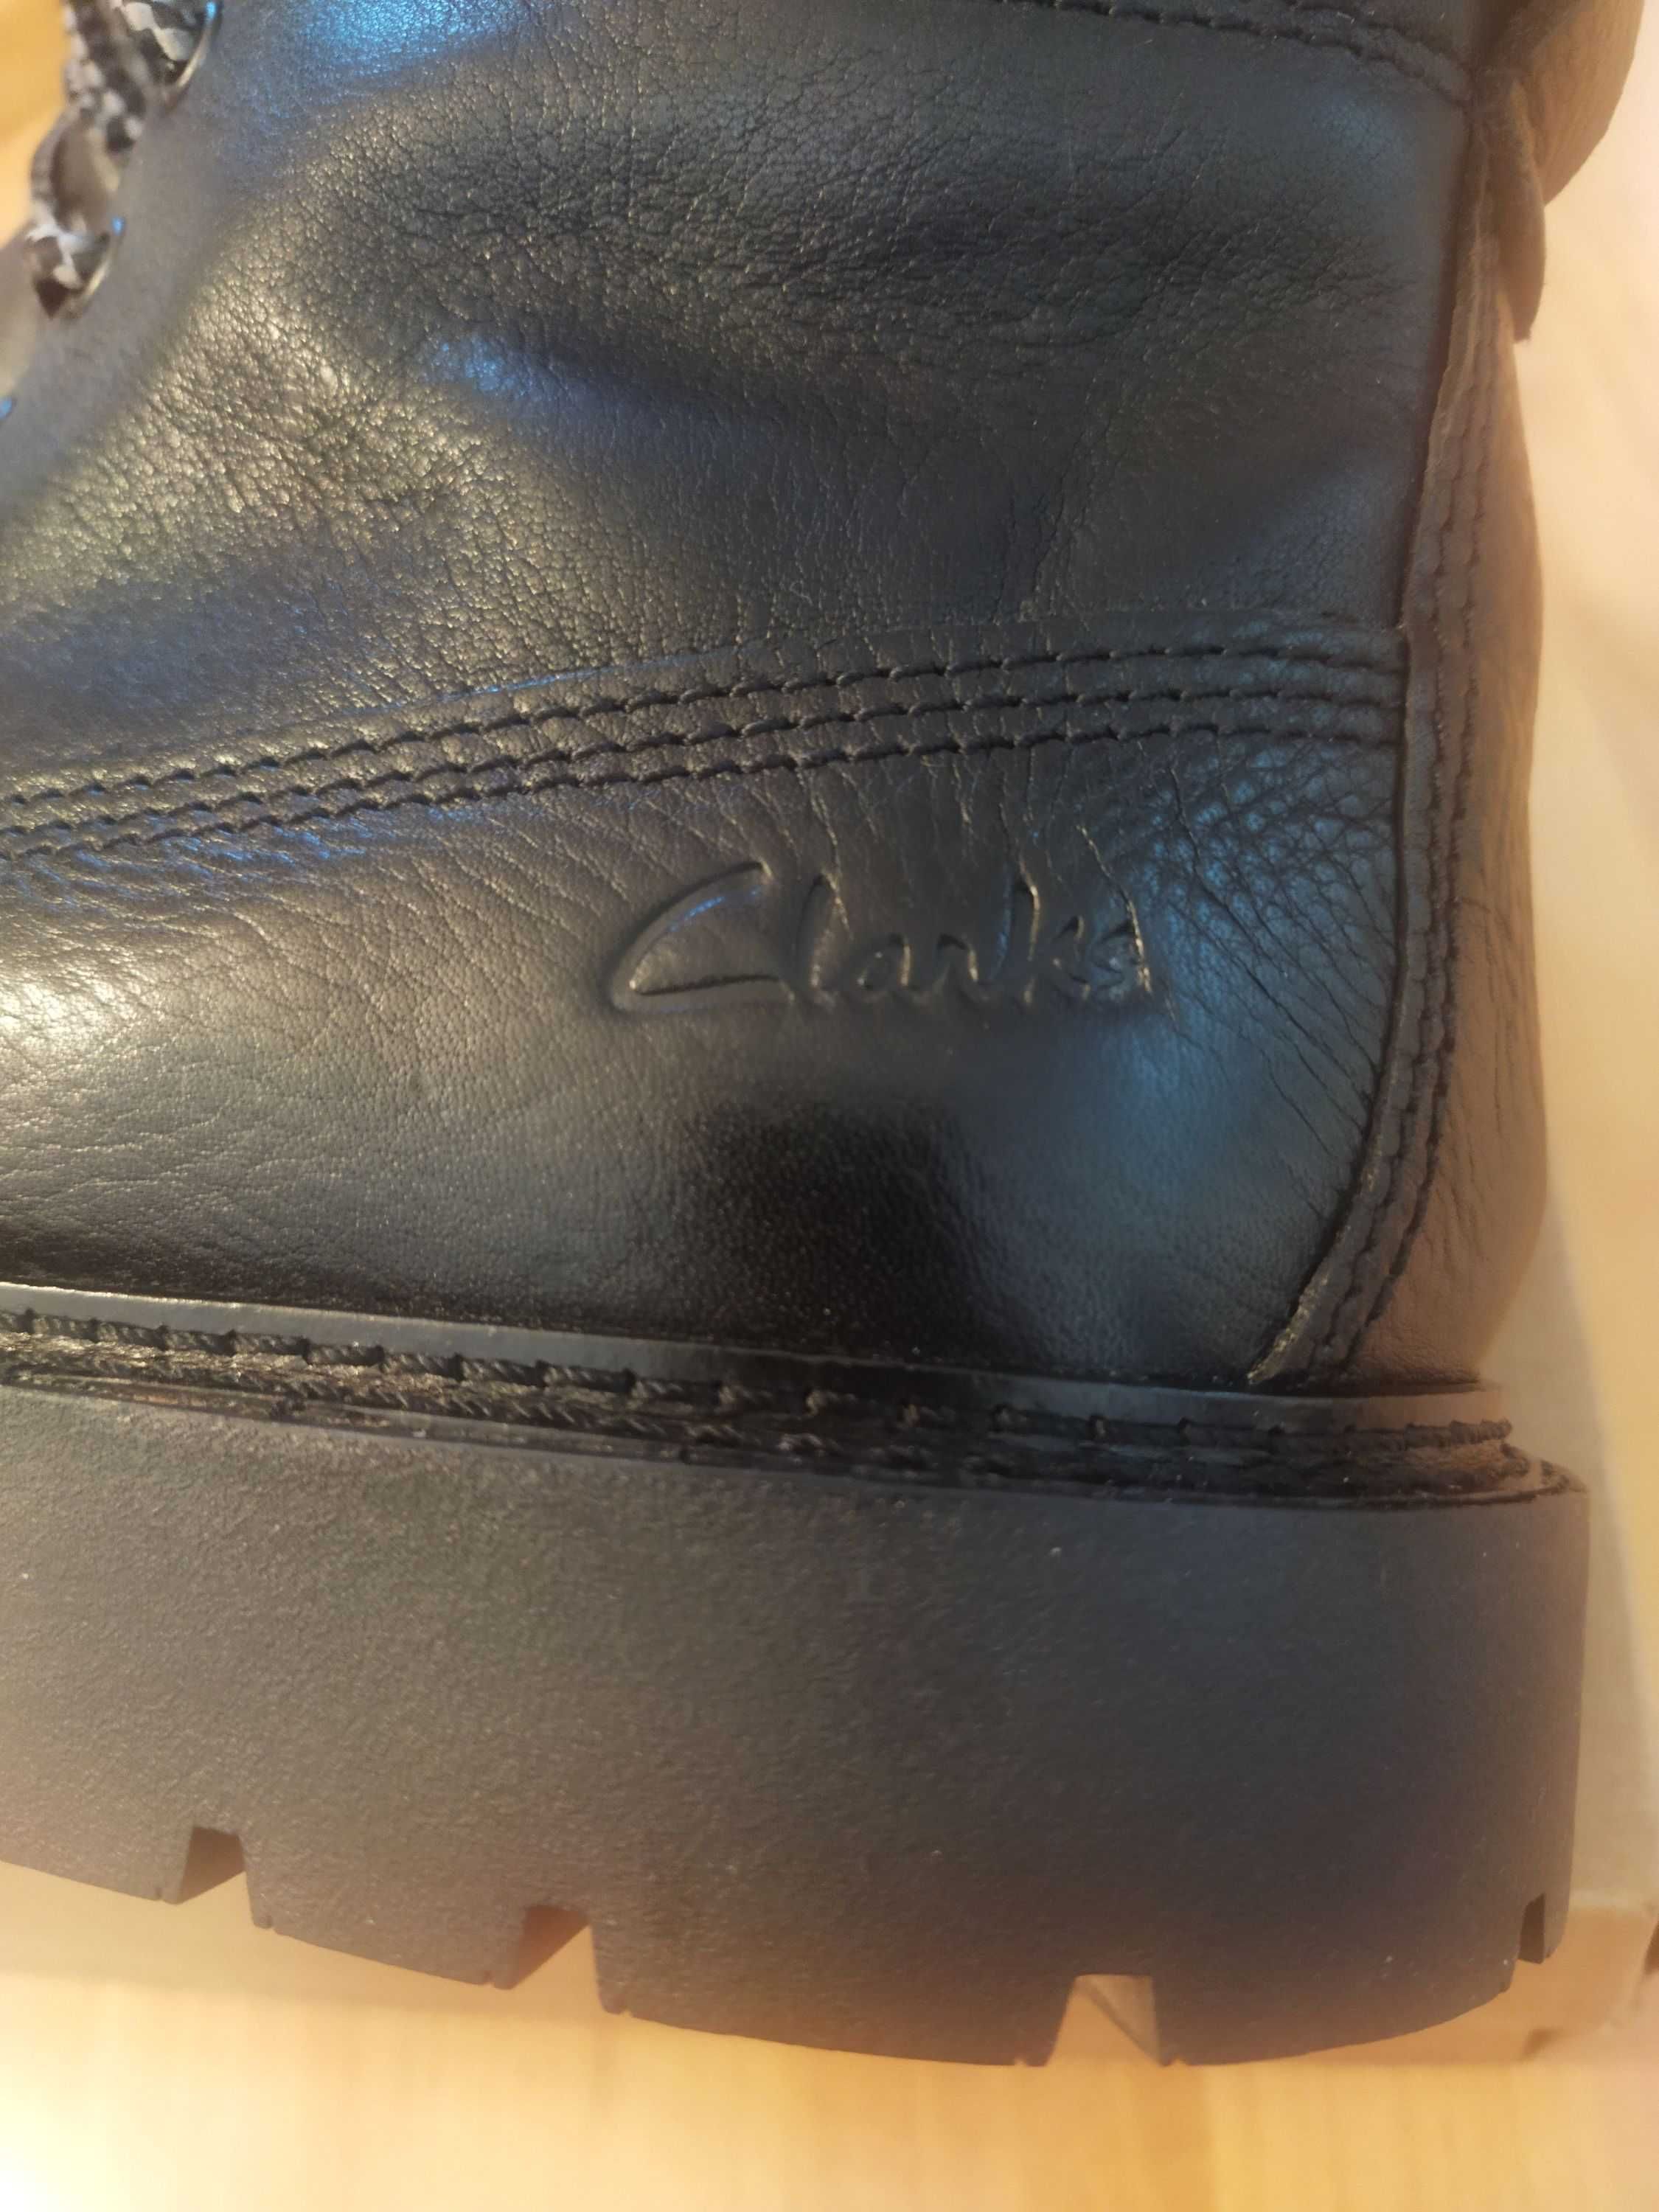 Ботинки Clarks (Великобритания),кожа,оригинал,новые,р-ры 42,43 и 44